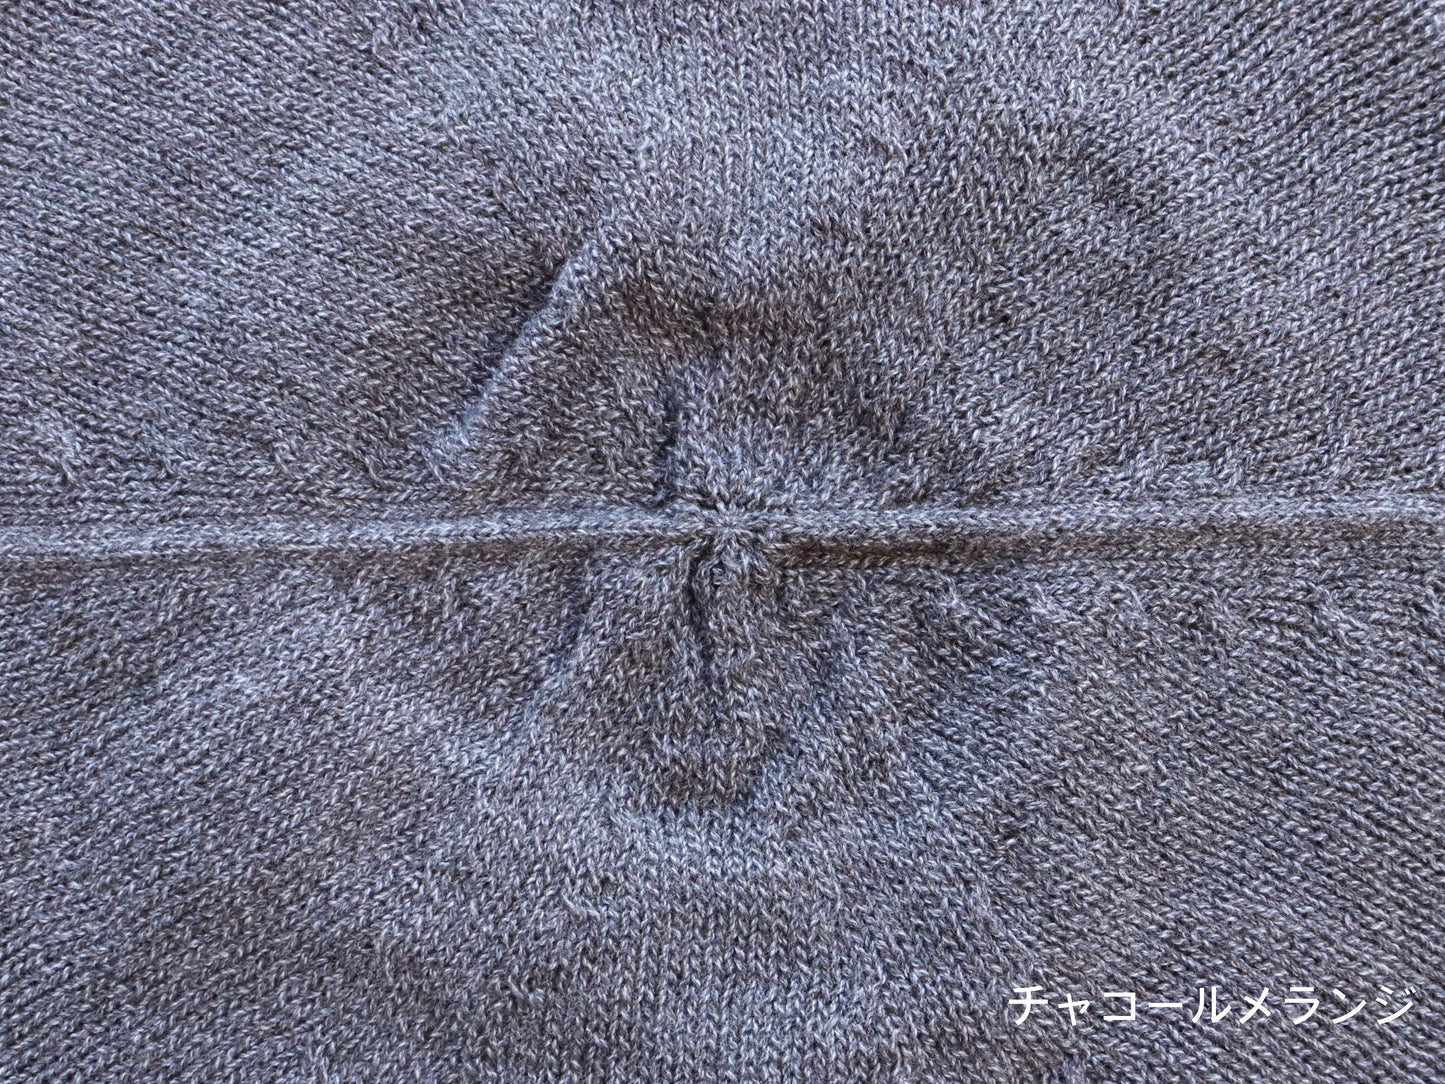 綿強撚糸 ベレー帽